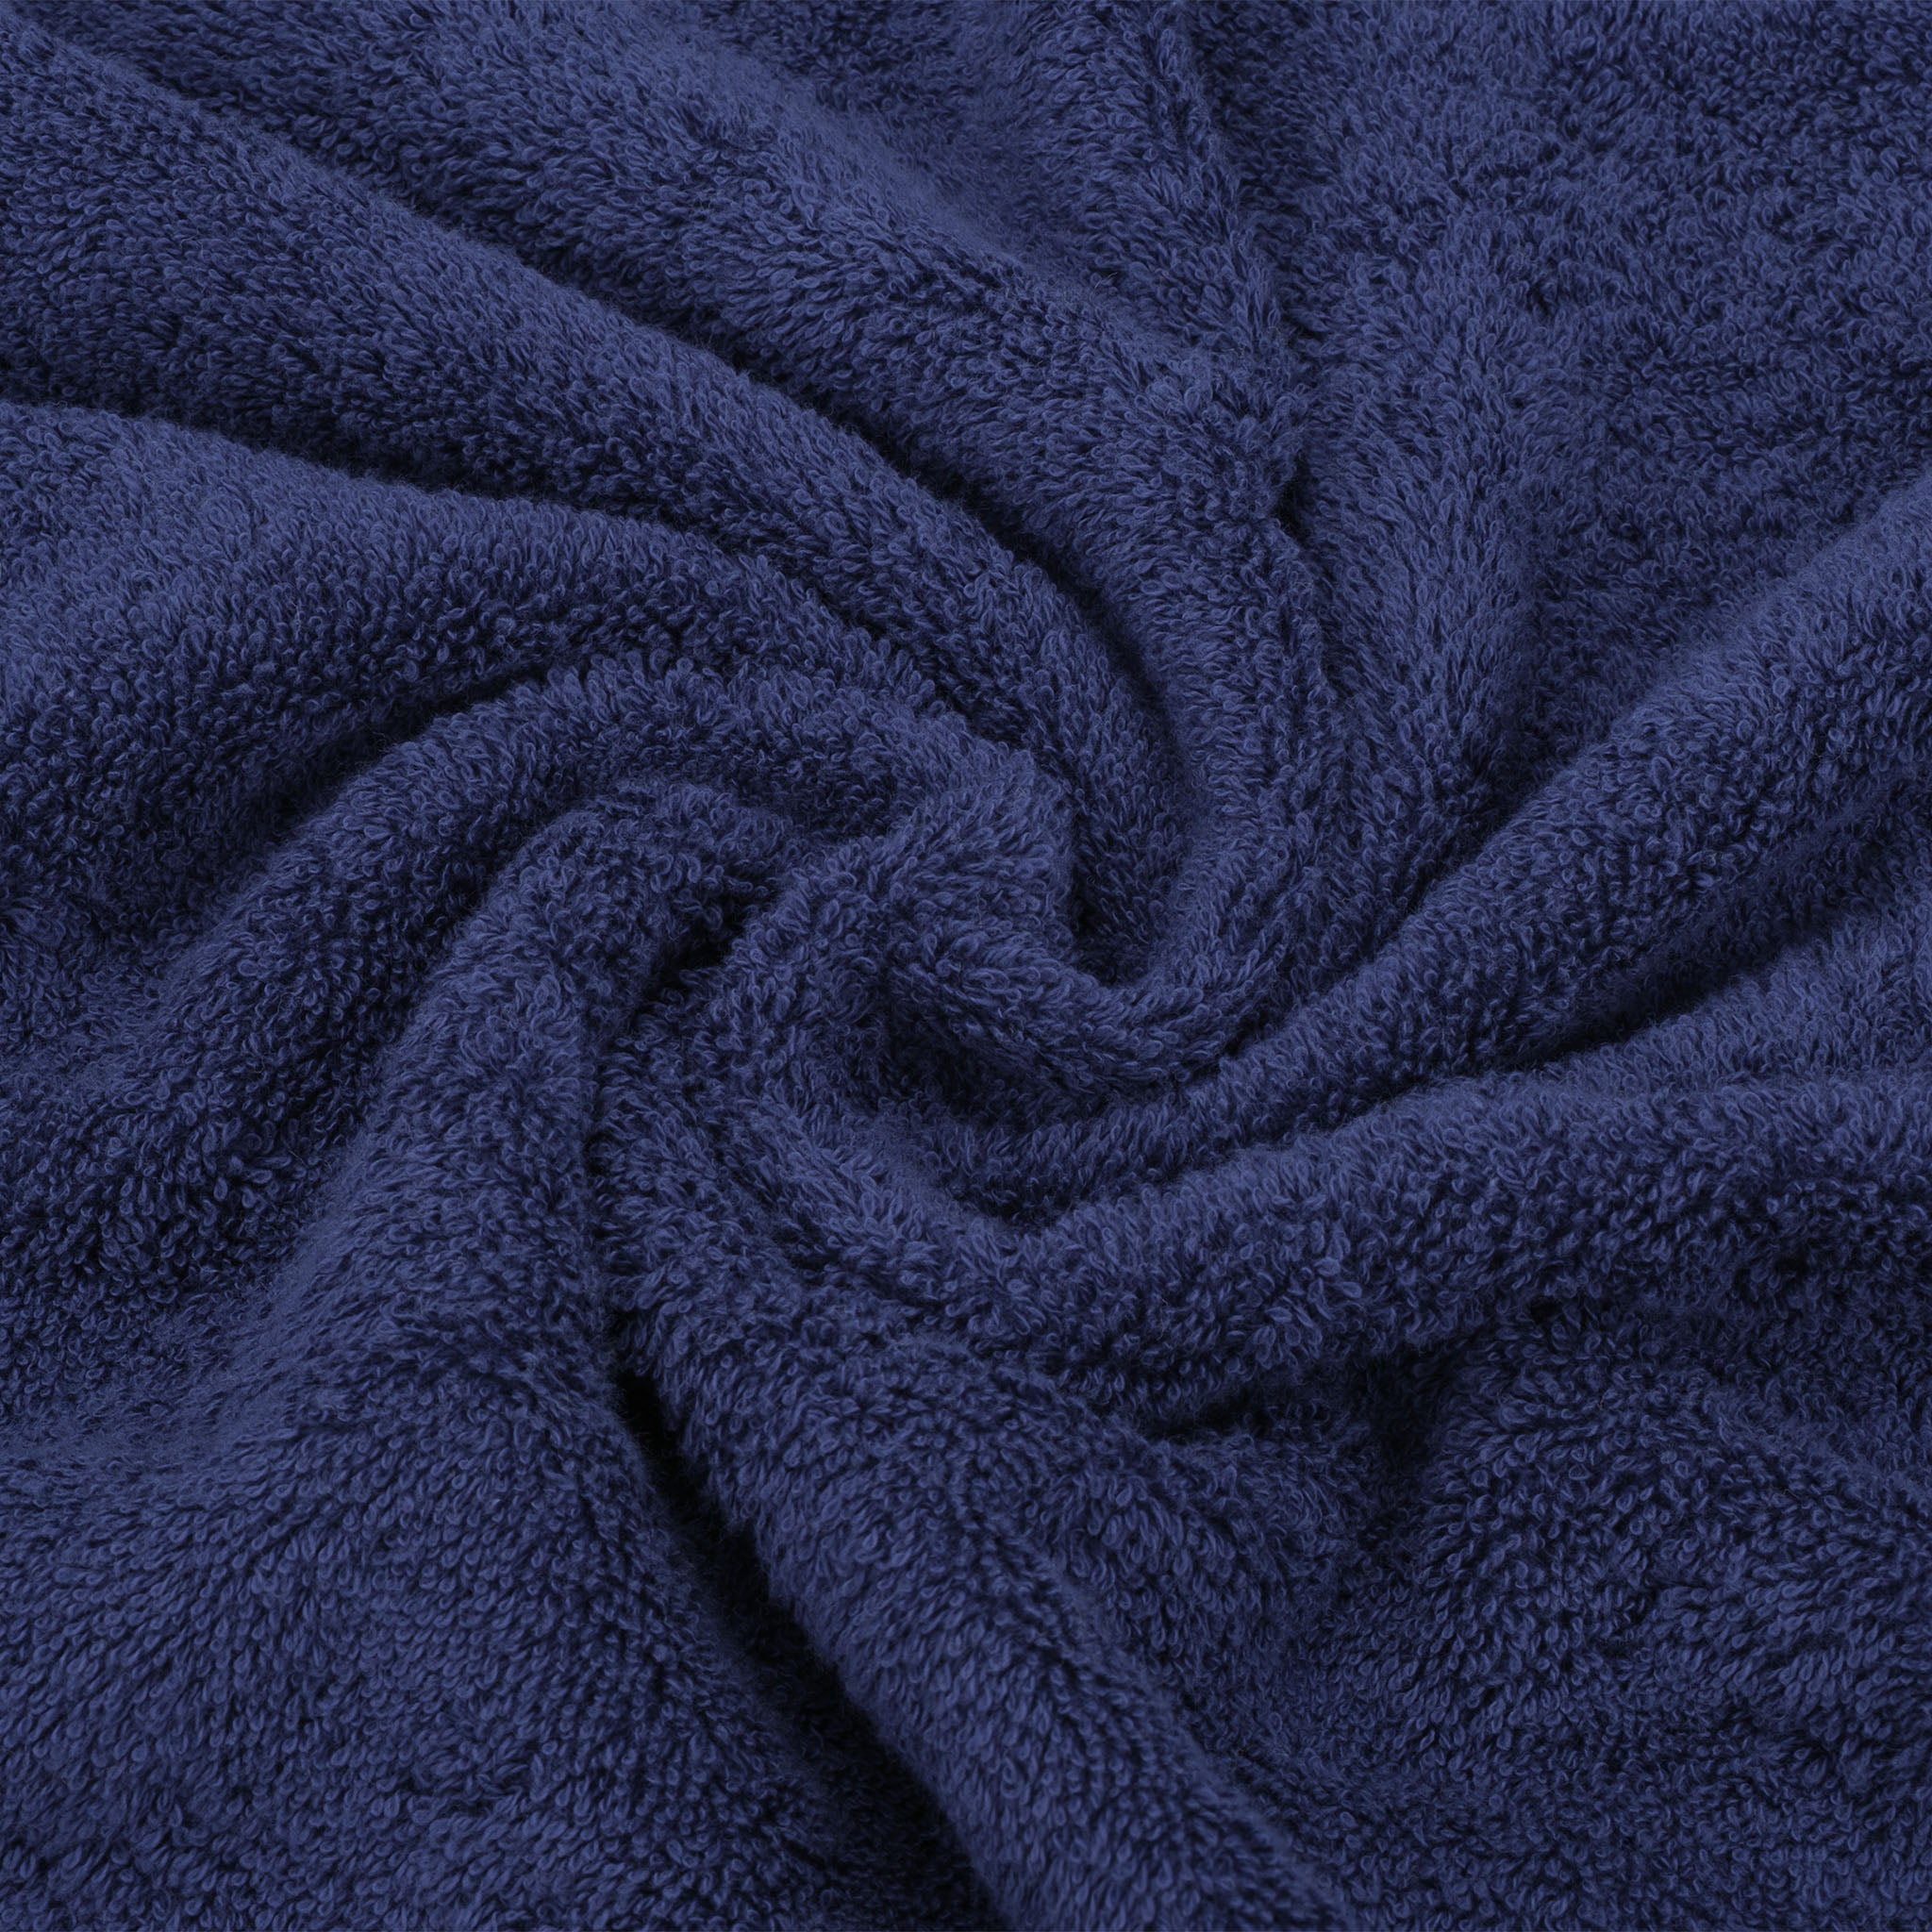 American Soft Linen 100% Turkish Cotton 6 Piece Towel Set Wholesale navy-blue-7